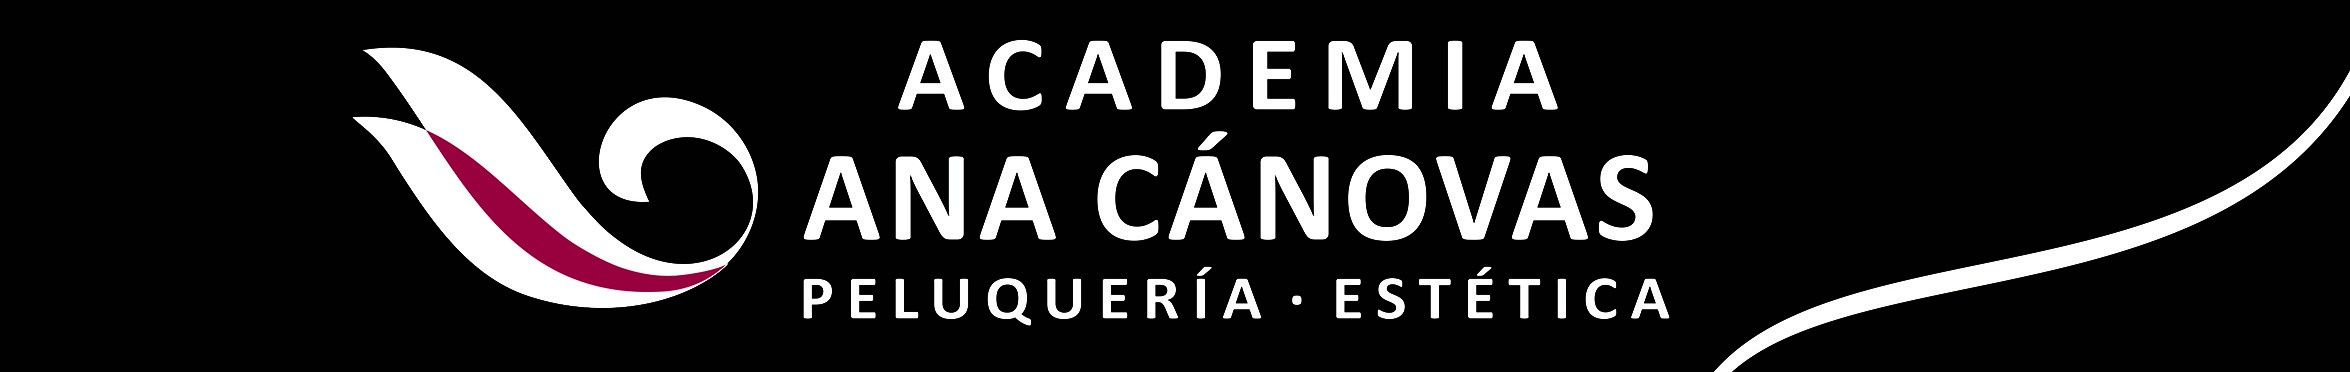 Curso de Maquillaje en Palma de Mallorca - Academia Ana Cánovas